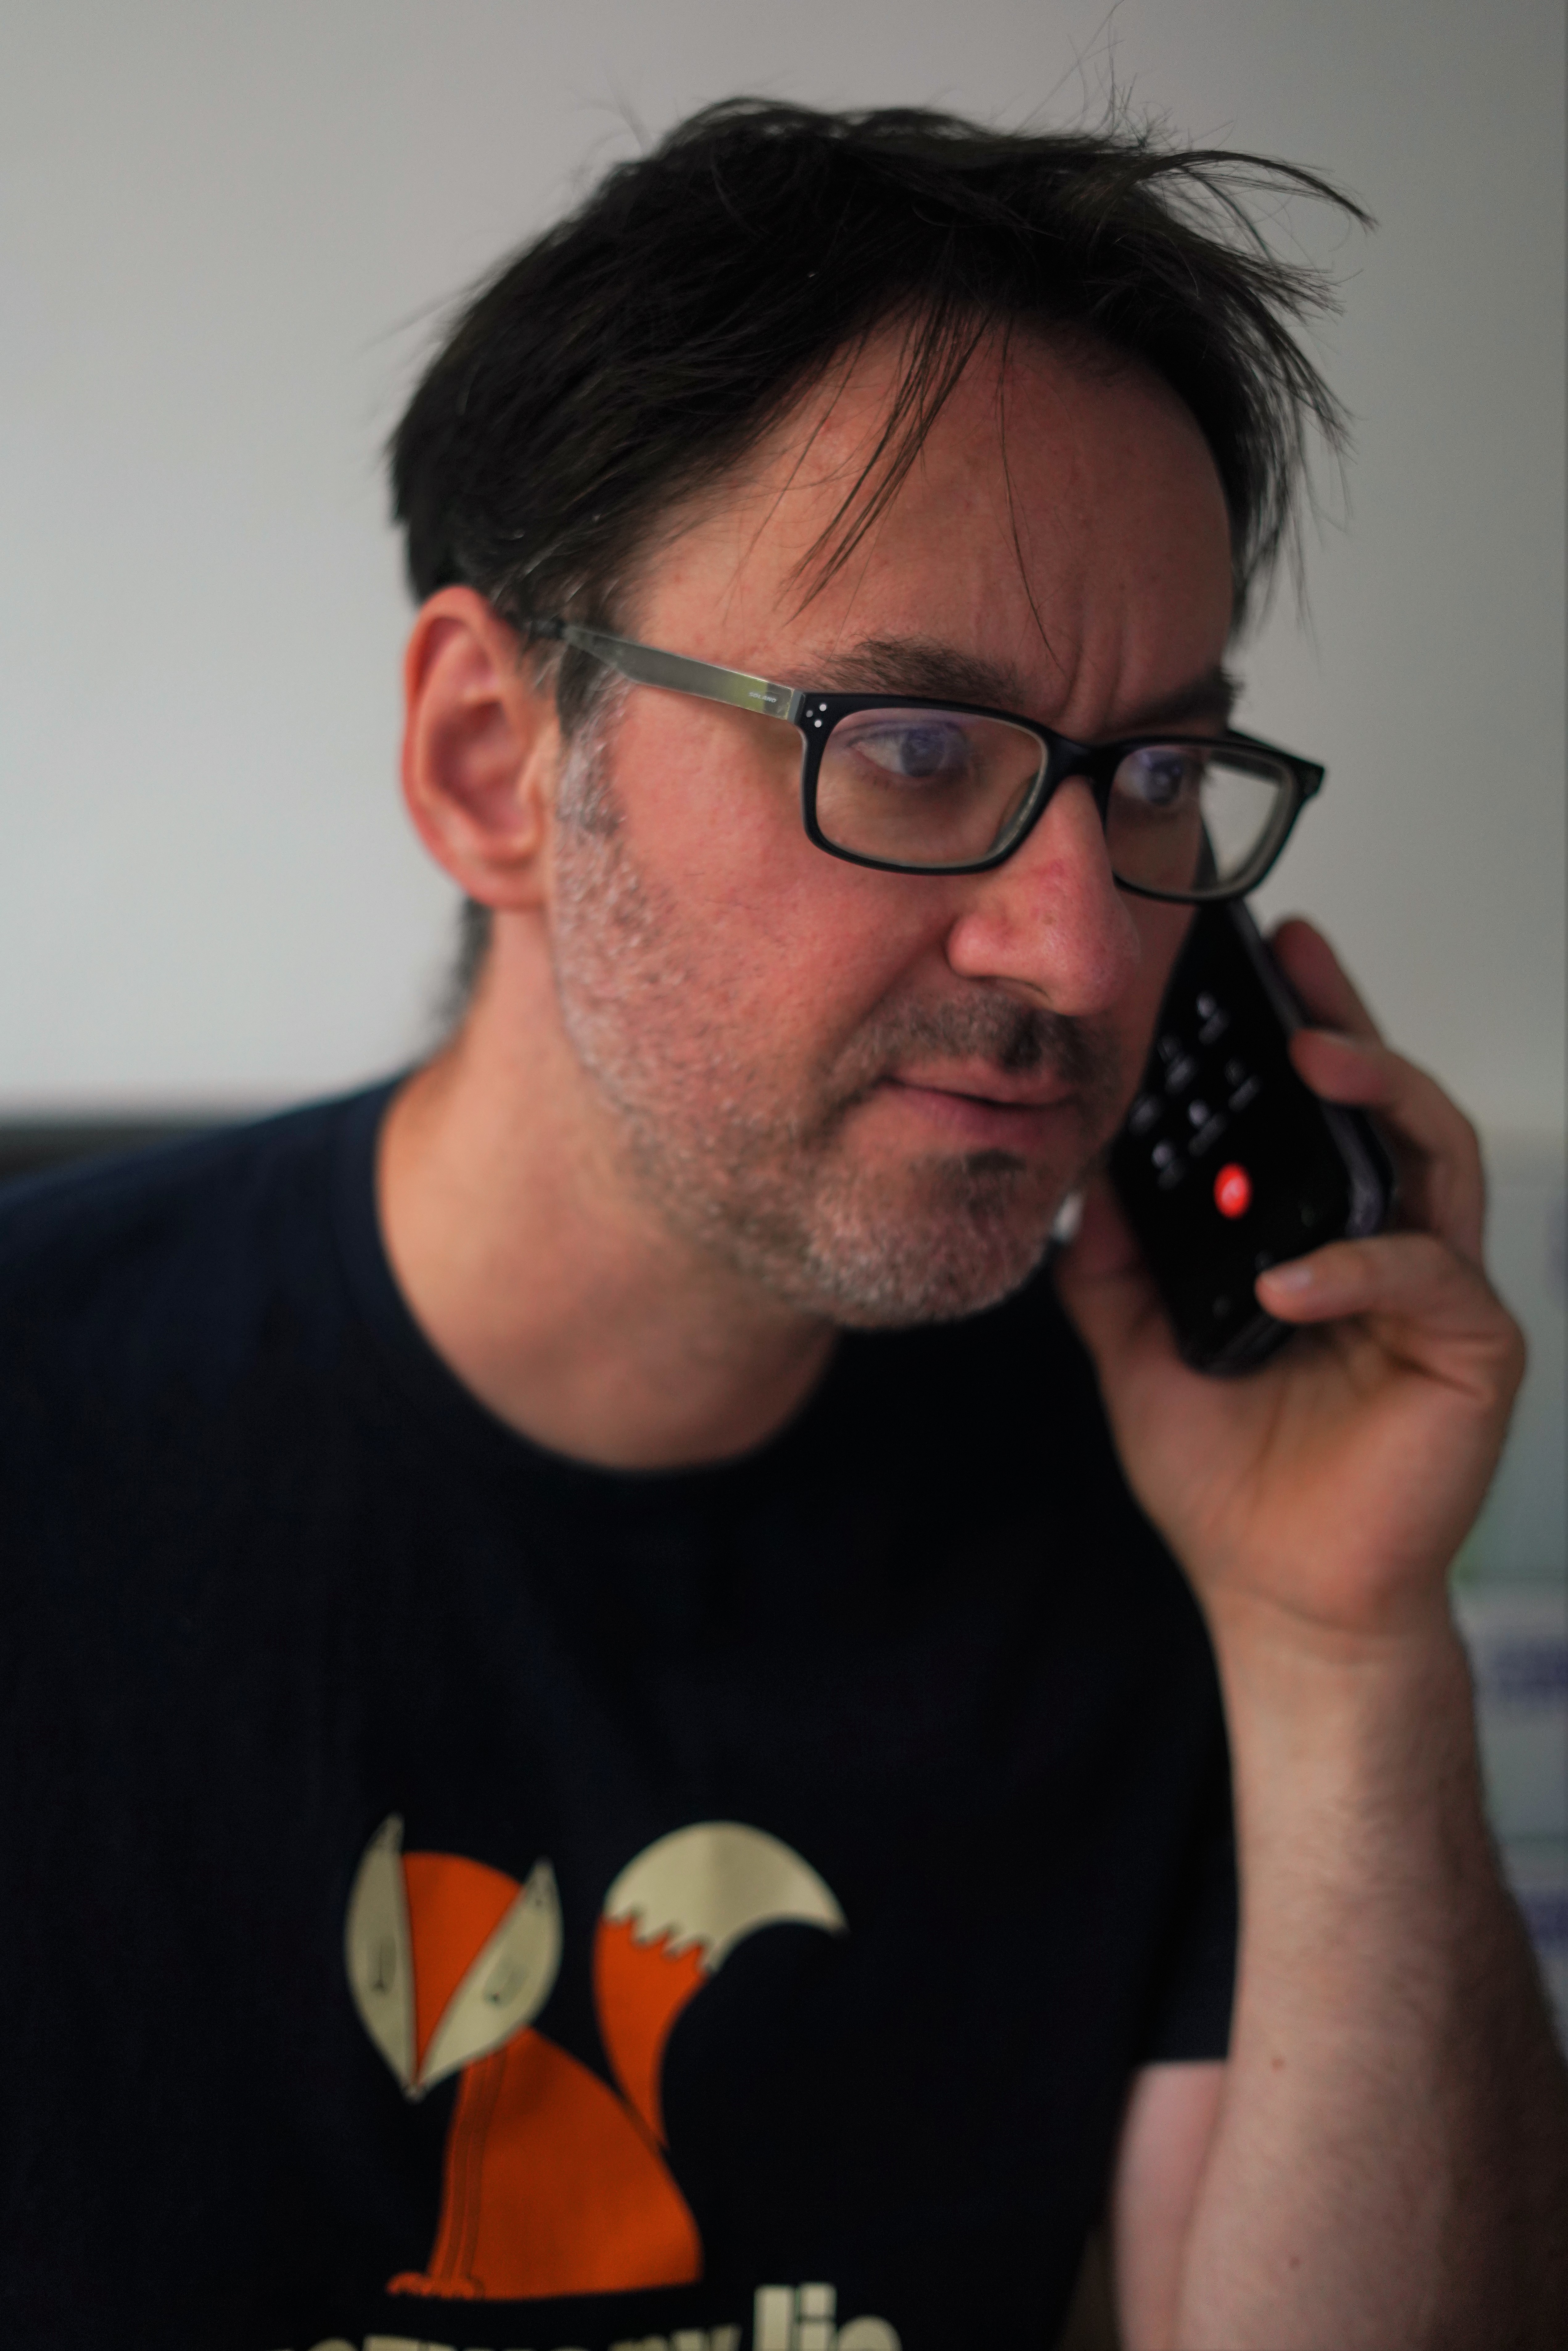 Maciej Lisak. Trzyma przy uchu telefon. Ubrany w koszulkę z rysunkiem rudego lisa.